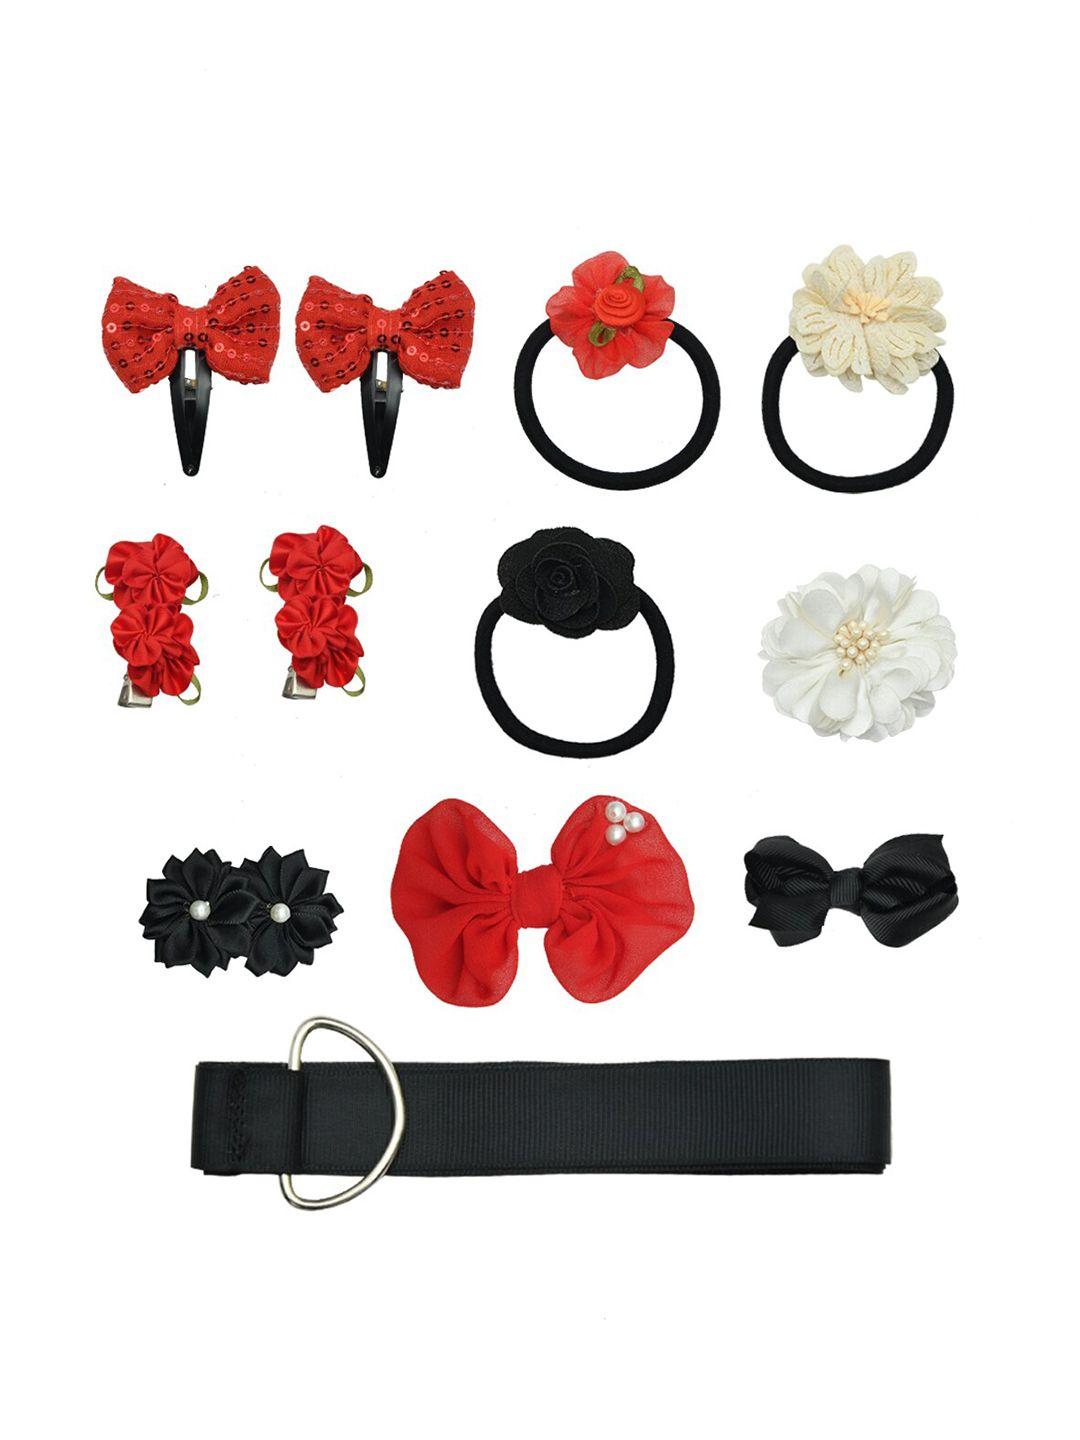 funkrafts-girls-red-&-black-embellished-hair-accessory-set-of-11